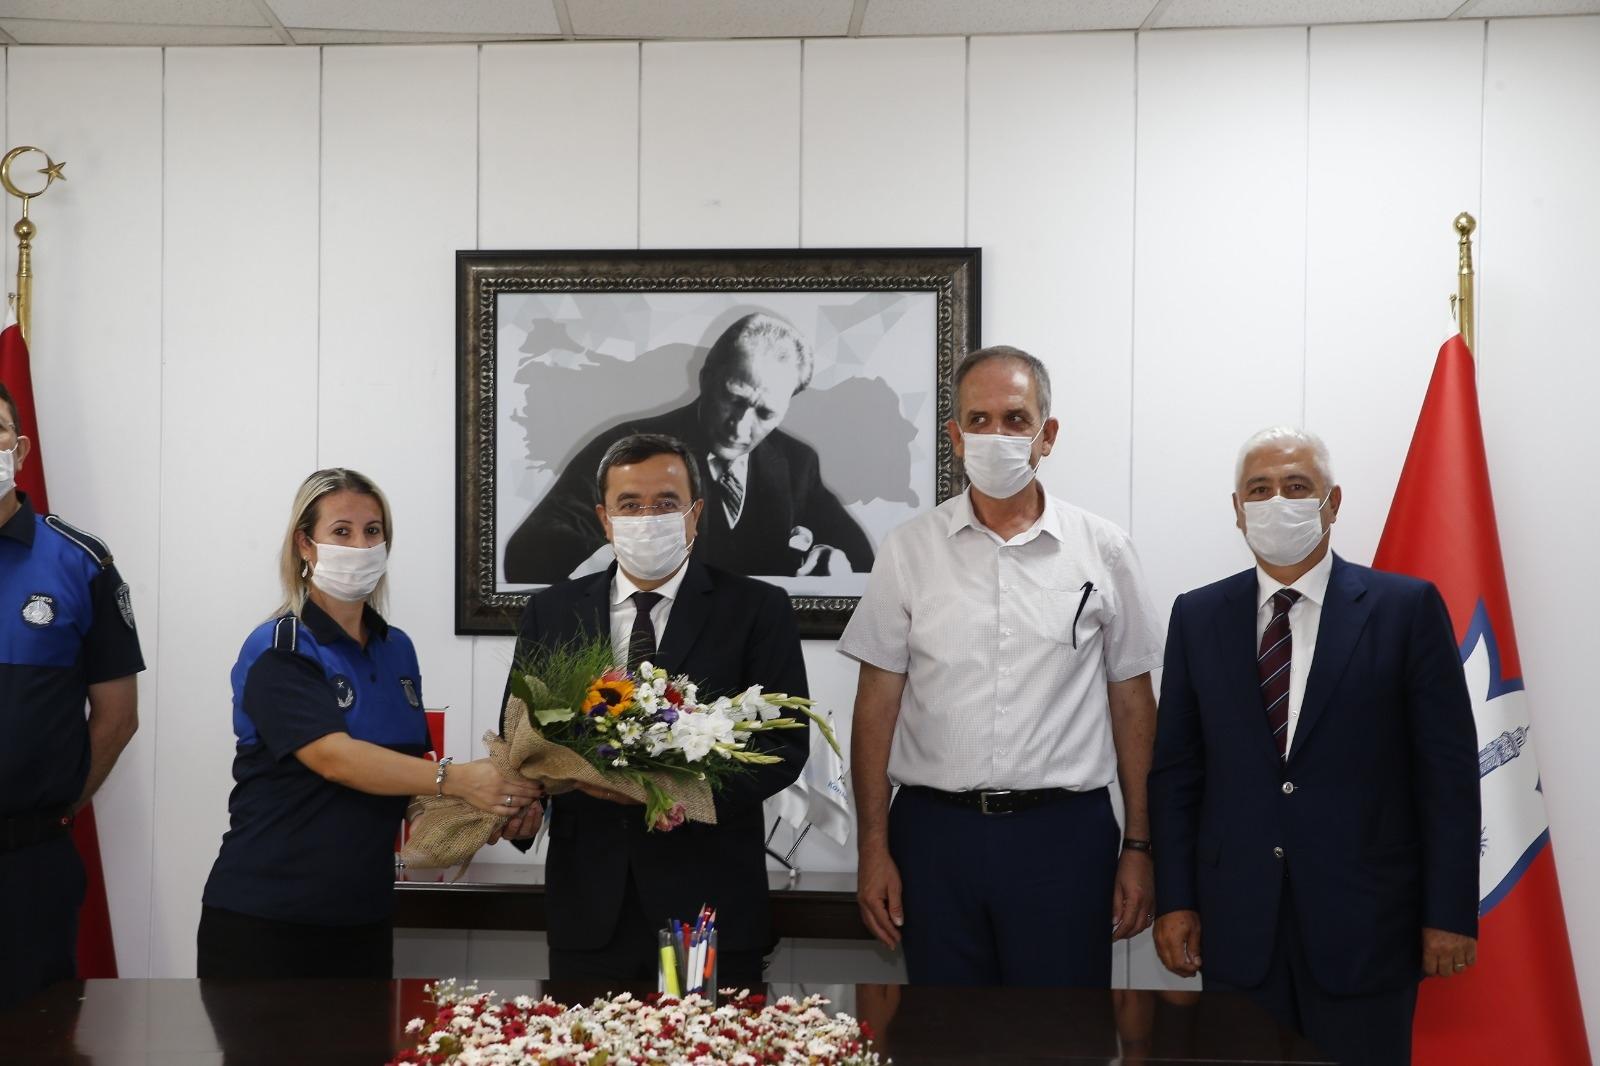 Başkan Batur’dan zabıtaya pandemi teşekkürü